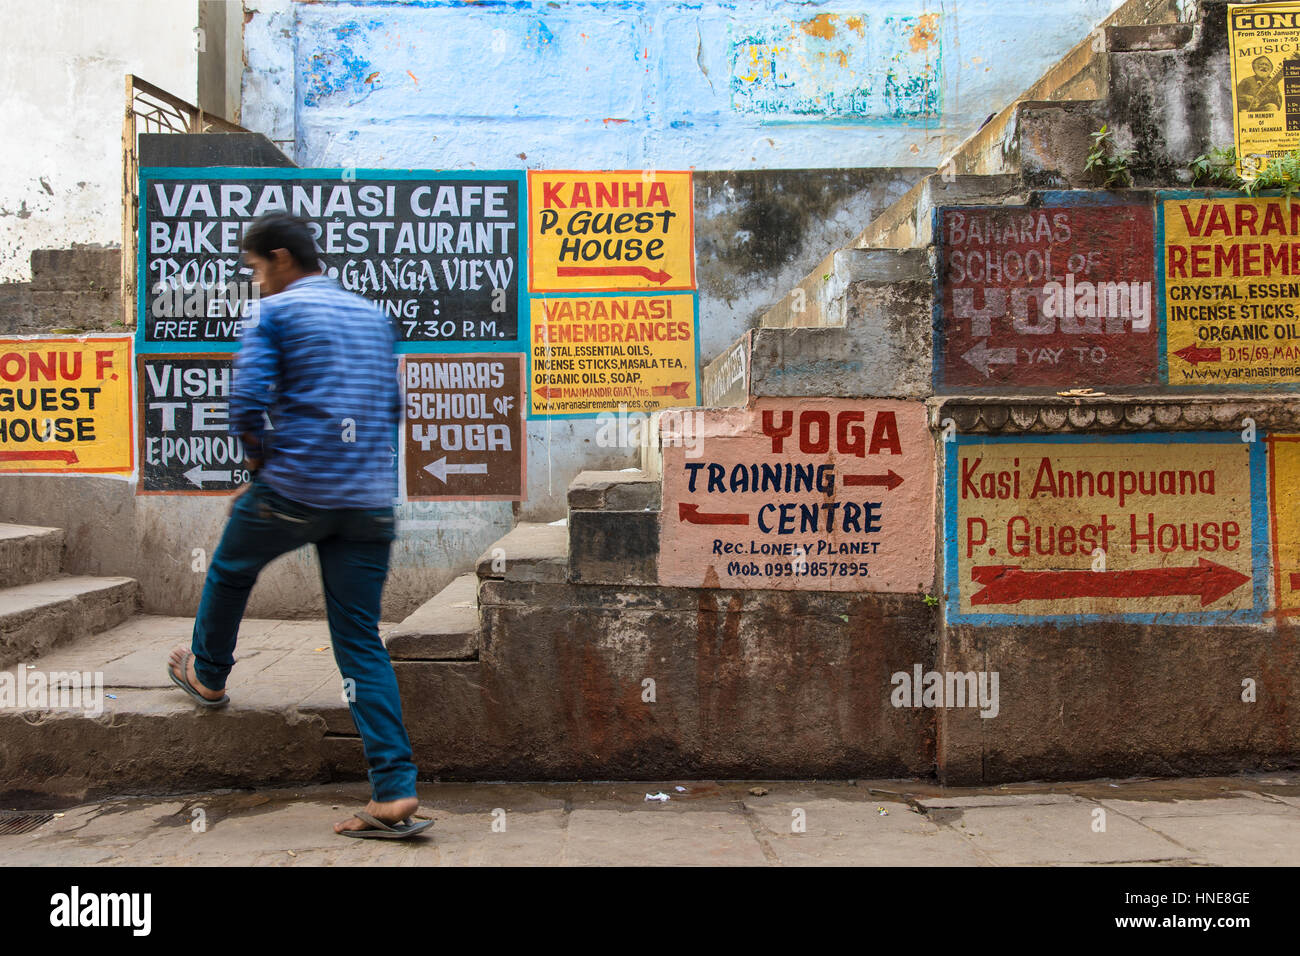 Les panneaux peints à la main de yoga publicité lodges, les écoles de musique et restaurants à Varanasi, en Inde, l'une des destinations touristiques les plus populaires. Banque D'Images